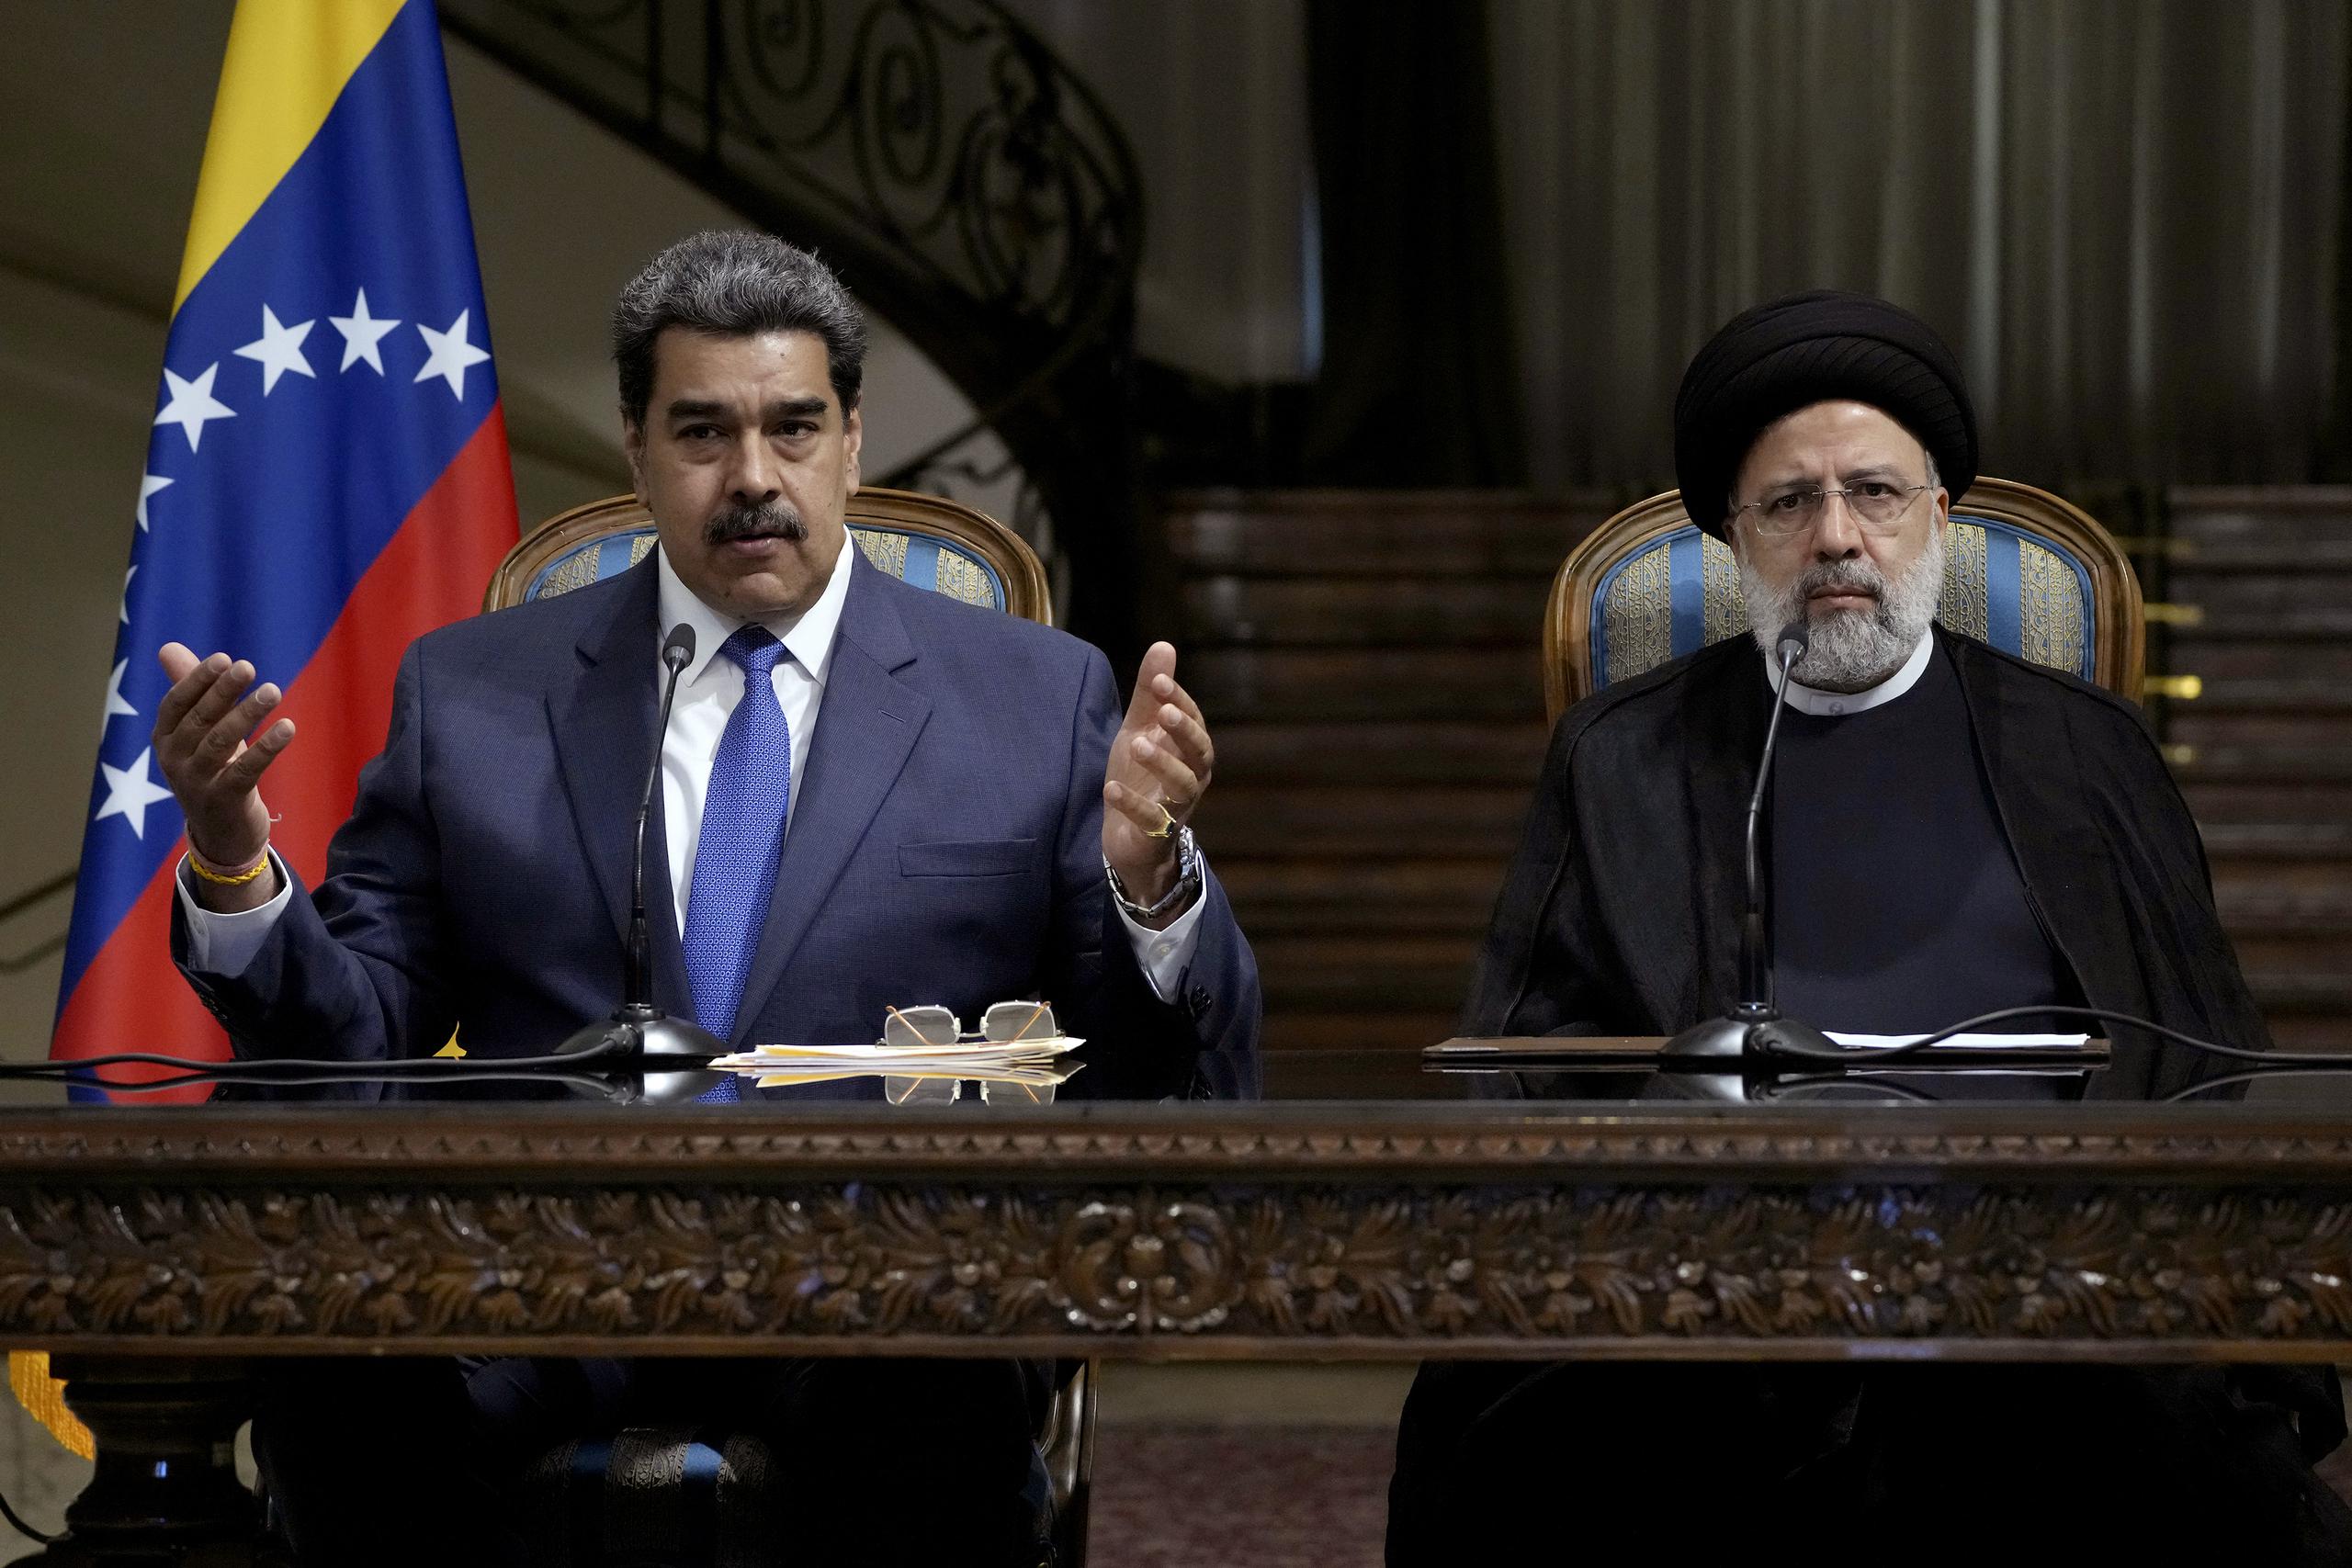 El presidente de Venezuela, Nicolás Maduro, en conferencia de prensa junto al presidente iraní Ebrahim Raisi, en el palacio de Saadabad, en Teherán, Irán, el sábado 11 de junio de 2022. (AP Foto/Vahid Salemi)